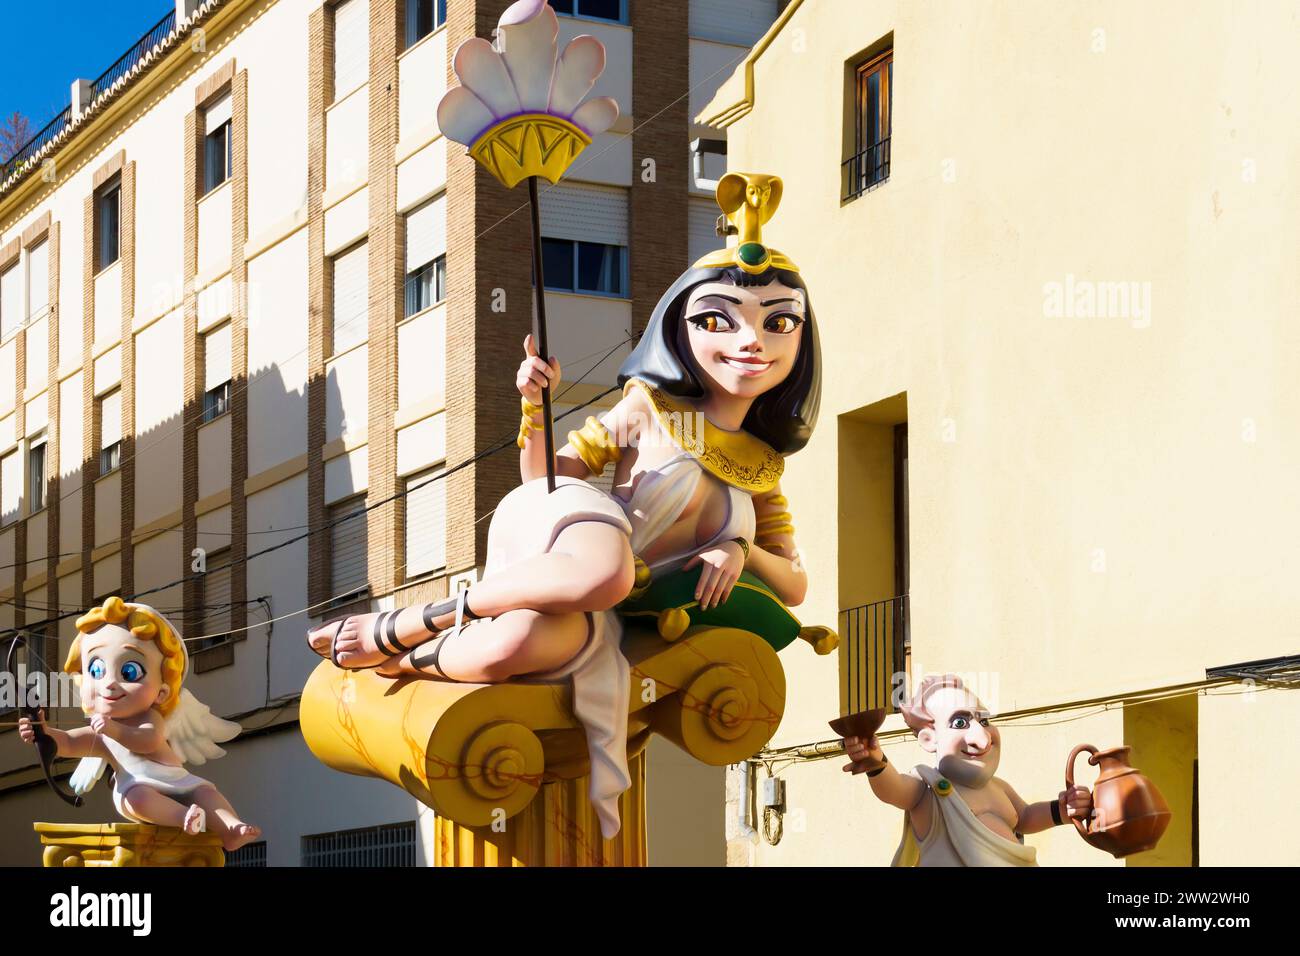 Le sculture in legno e cartapesta e i monumenti conosciuti come Las Fallas in occasione della festa di San Giuseppe nella città valenciana di oliva, in Spagna Foto Stock